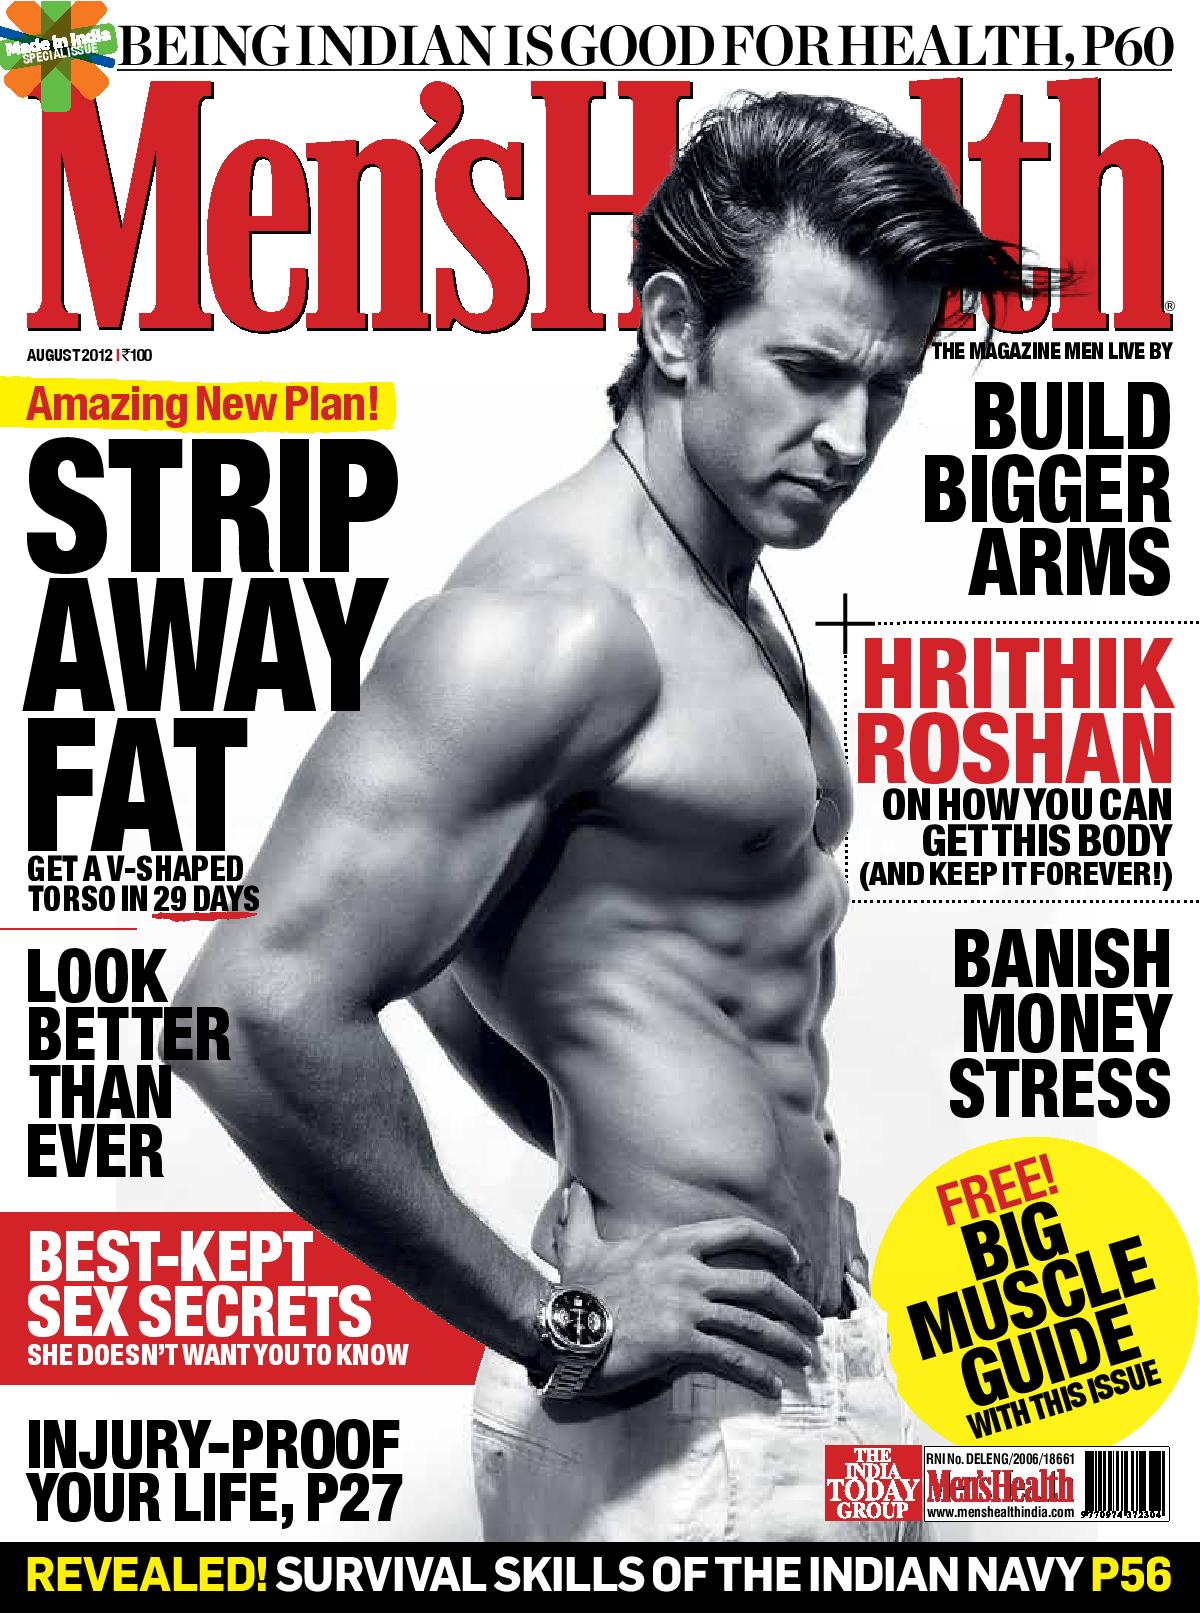 Hrithik Roshan on the cover of Men's Health Magazine - August 2012